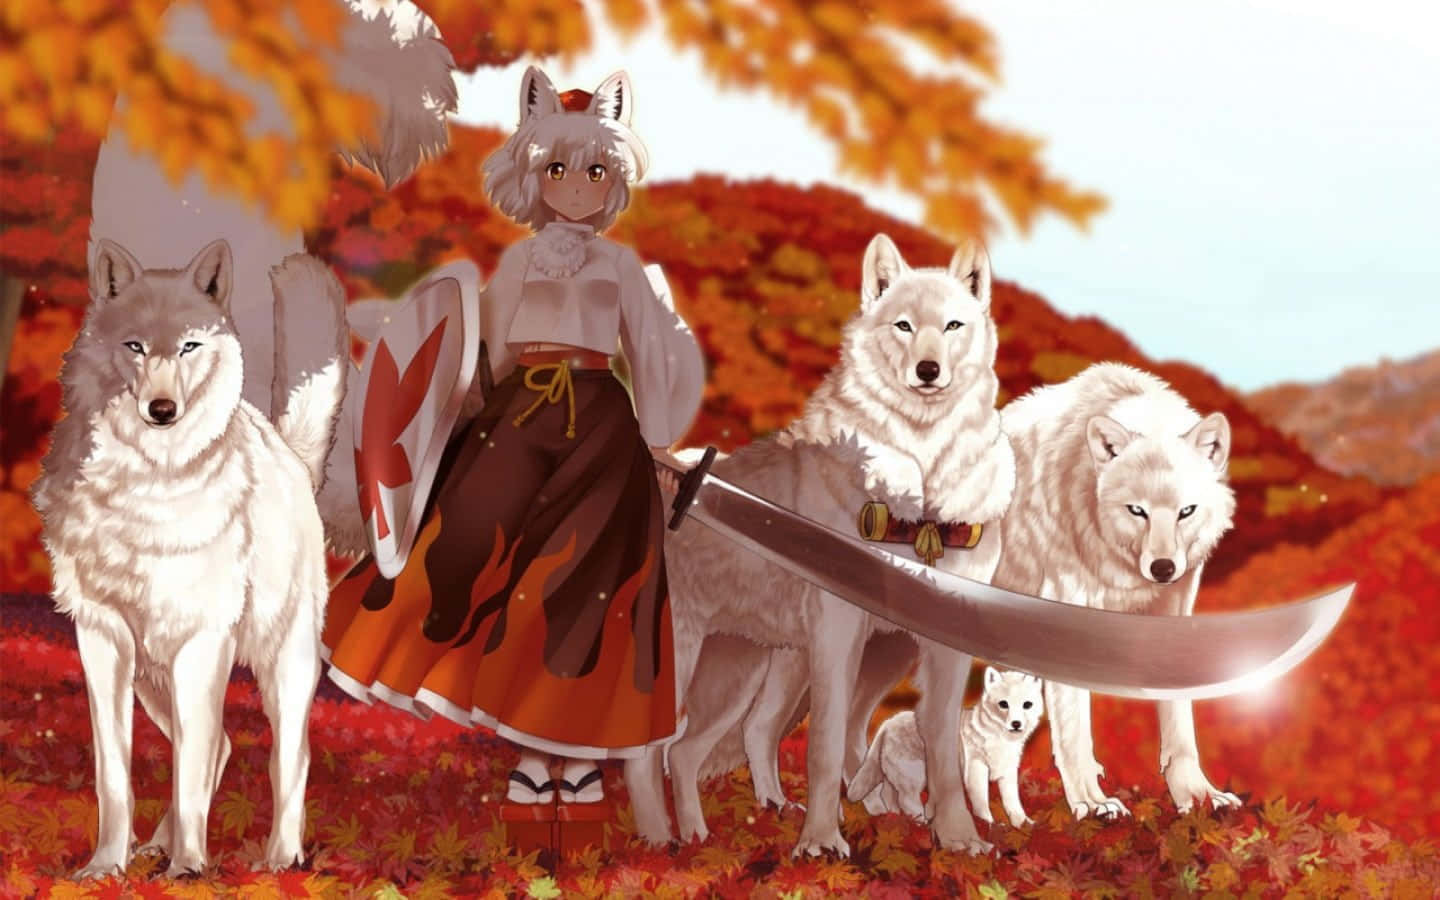 Imagende Una Chica De Anime Con Kimono Y Espada Rodeada De Lobos.